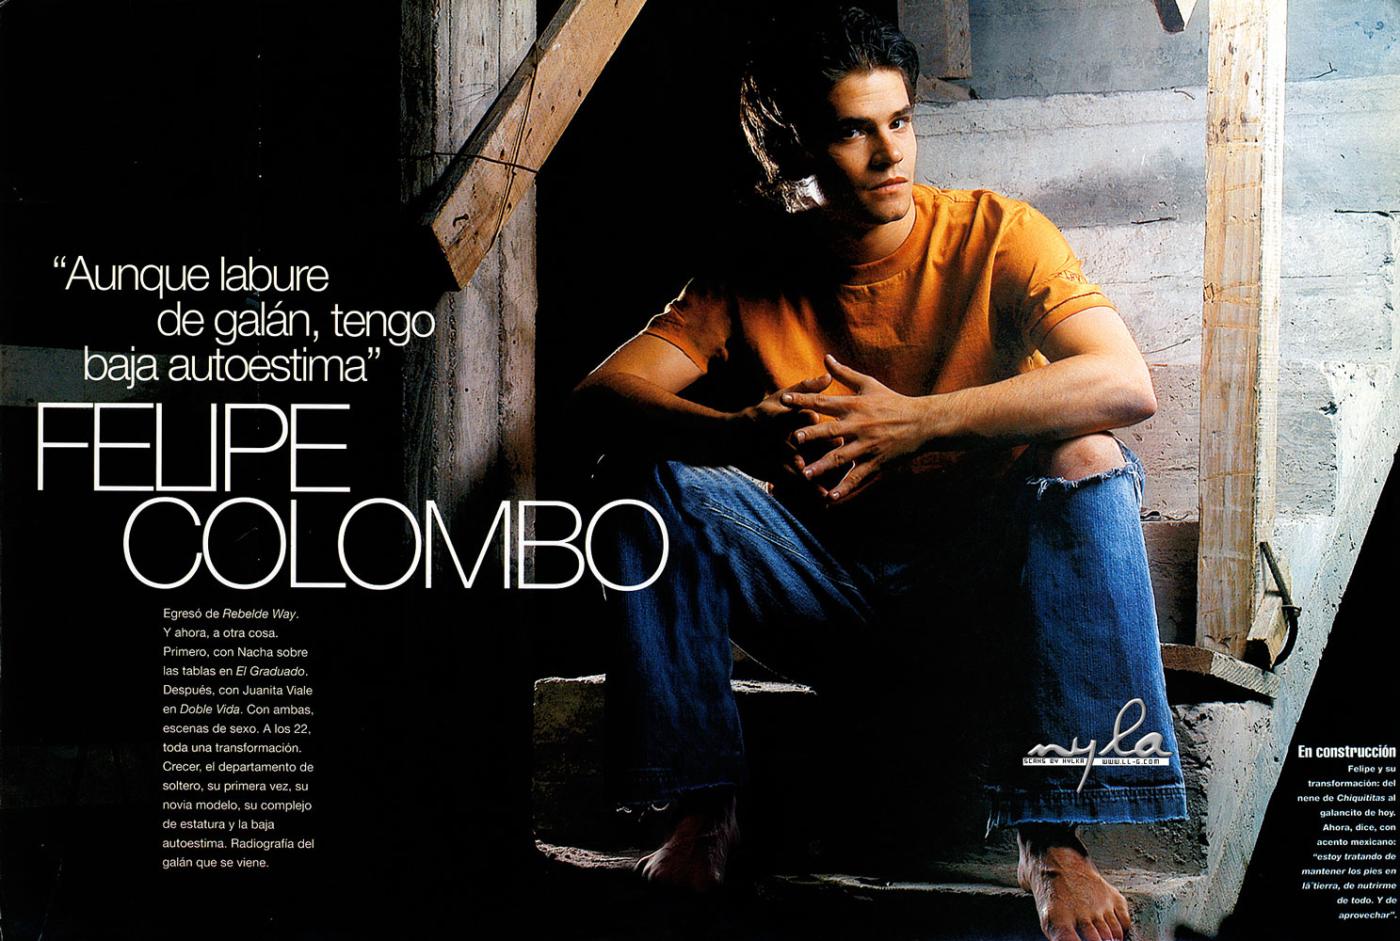 General photo of Felipe Colombo